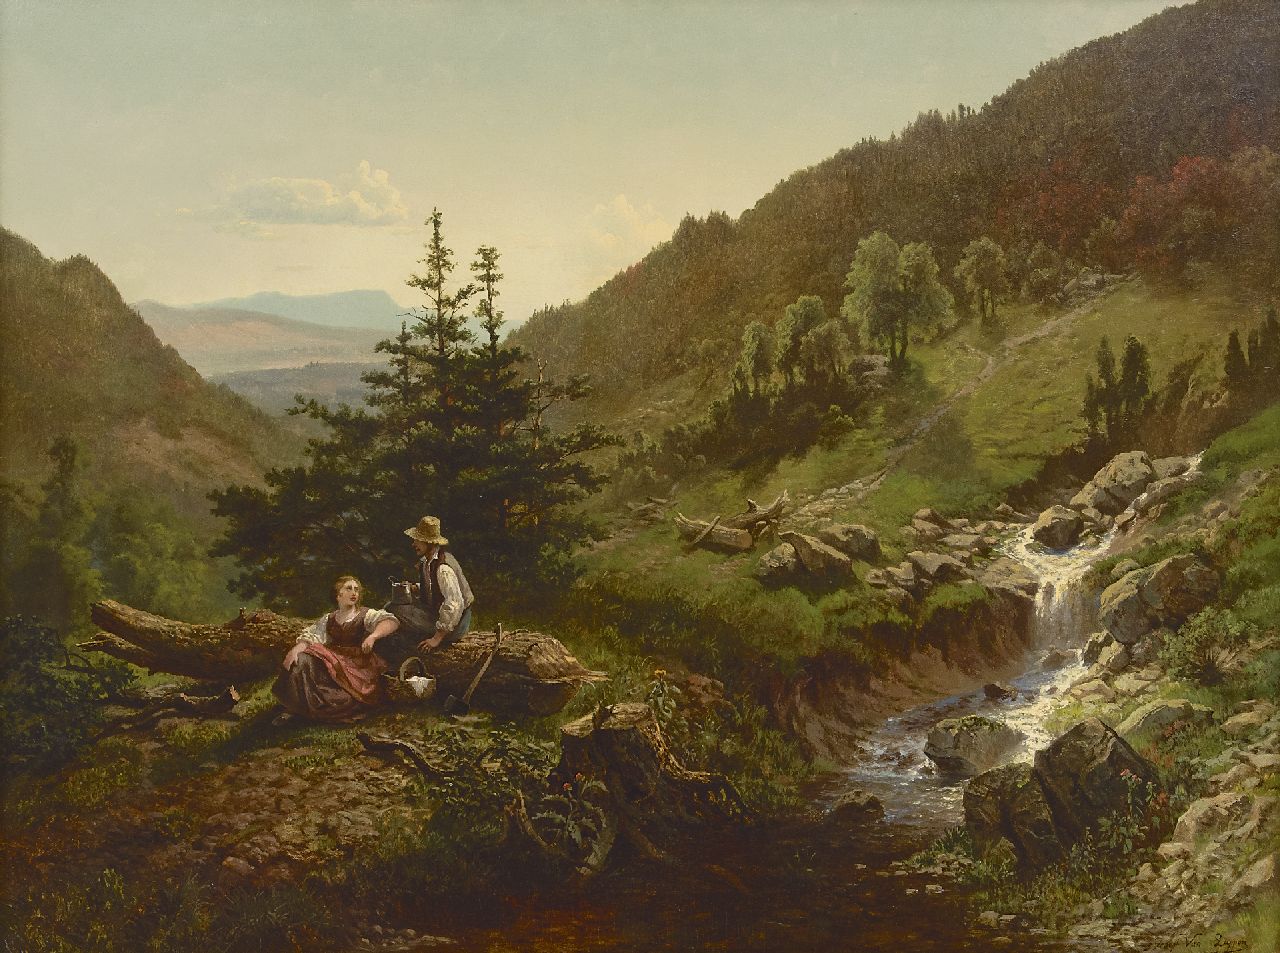 Luppen J.G.A. van | 'Joseph' Gérard Adrien van Luppen | Schilderijen te koop aangeboden | Arcadisch landschap met herderspaar, olieverf op doek 76,2 x 101,2 cm, gesigneerd rechtsonder